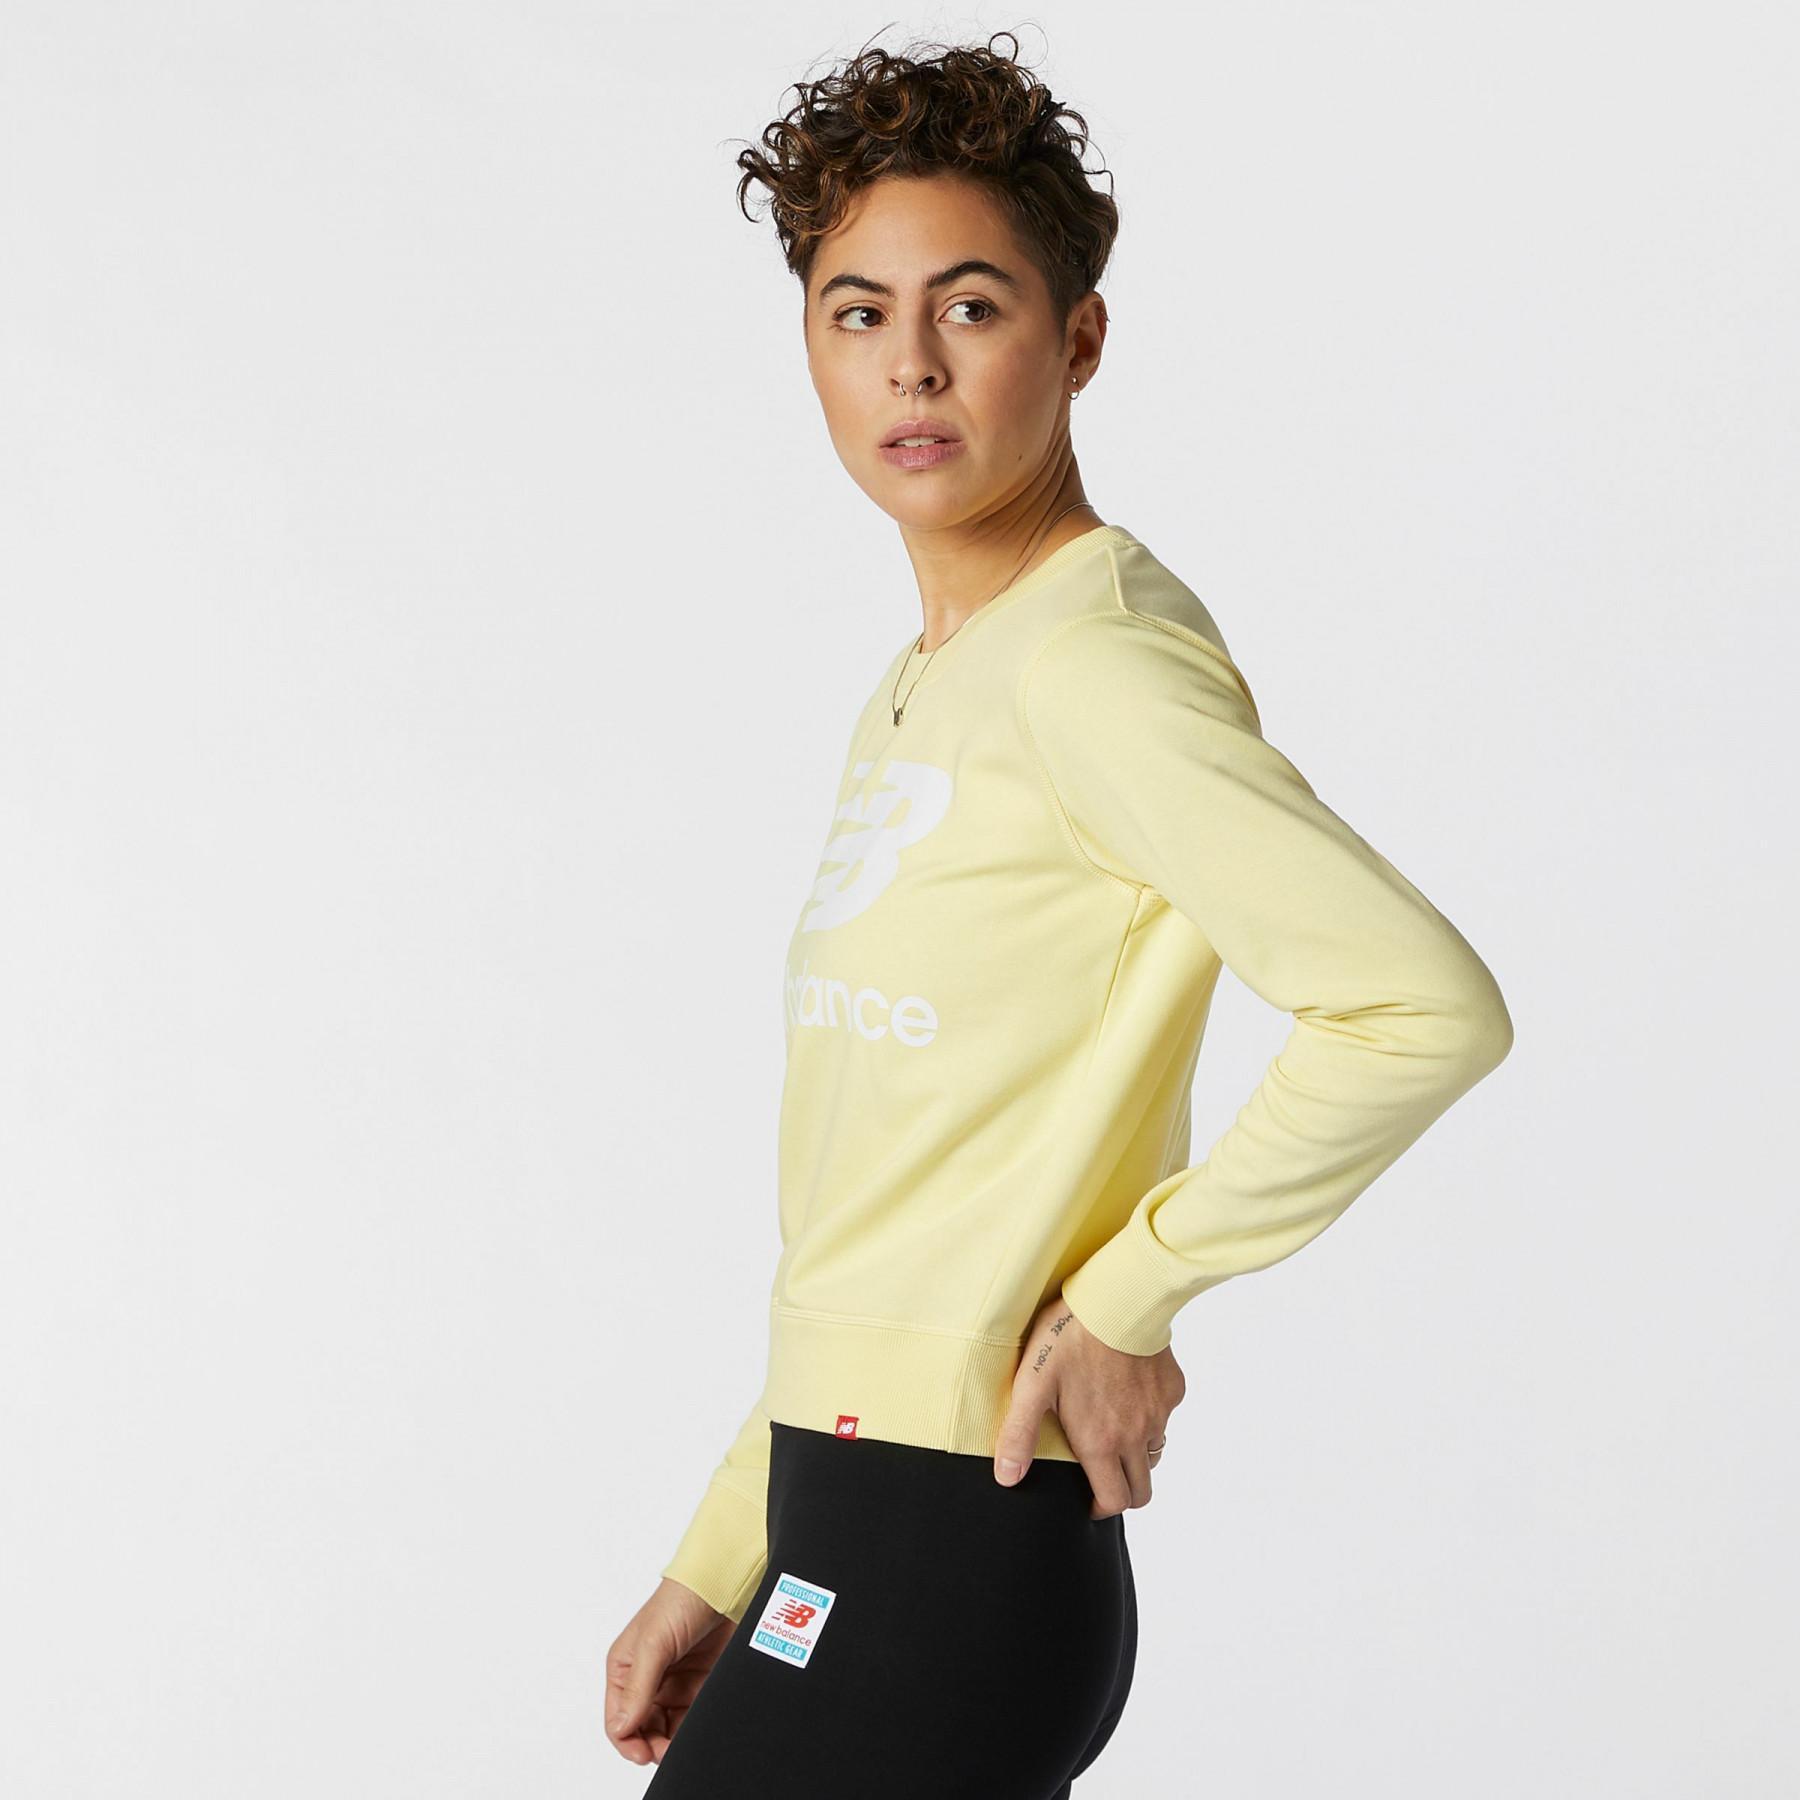 Damen-Sweatshirt New Balance essentials crew fleece